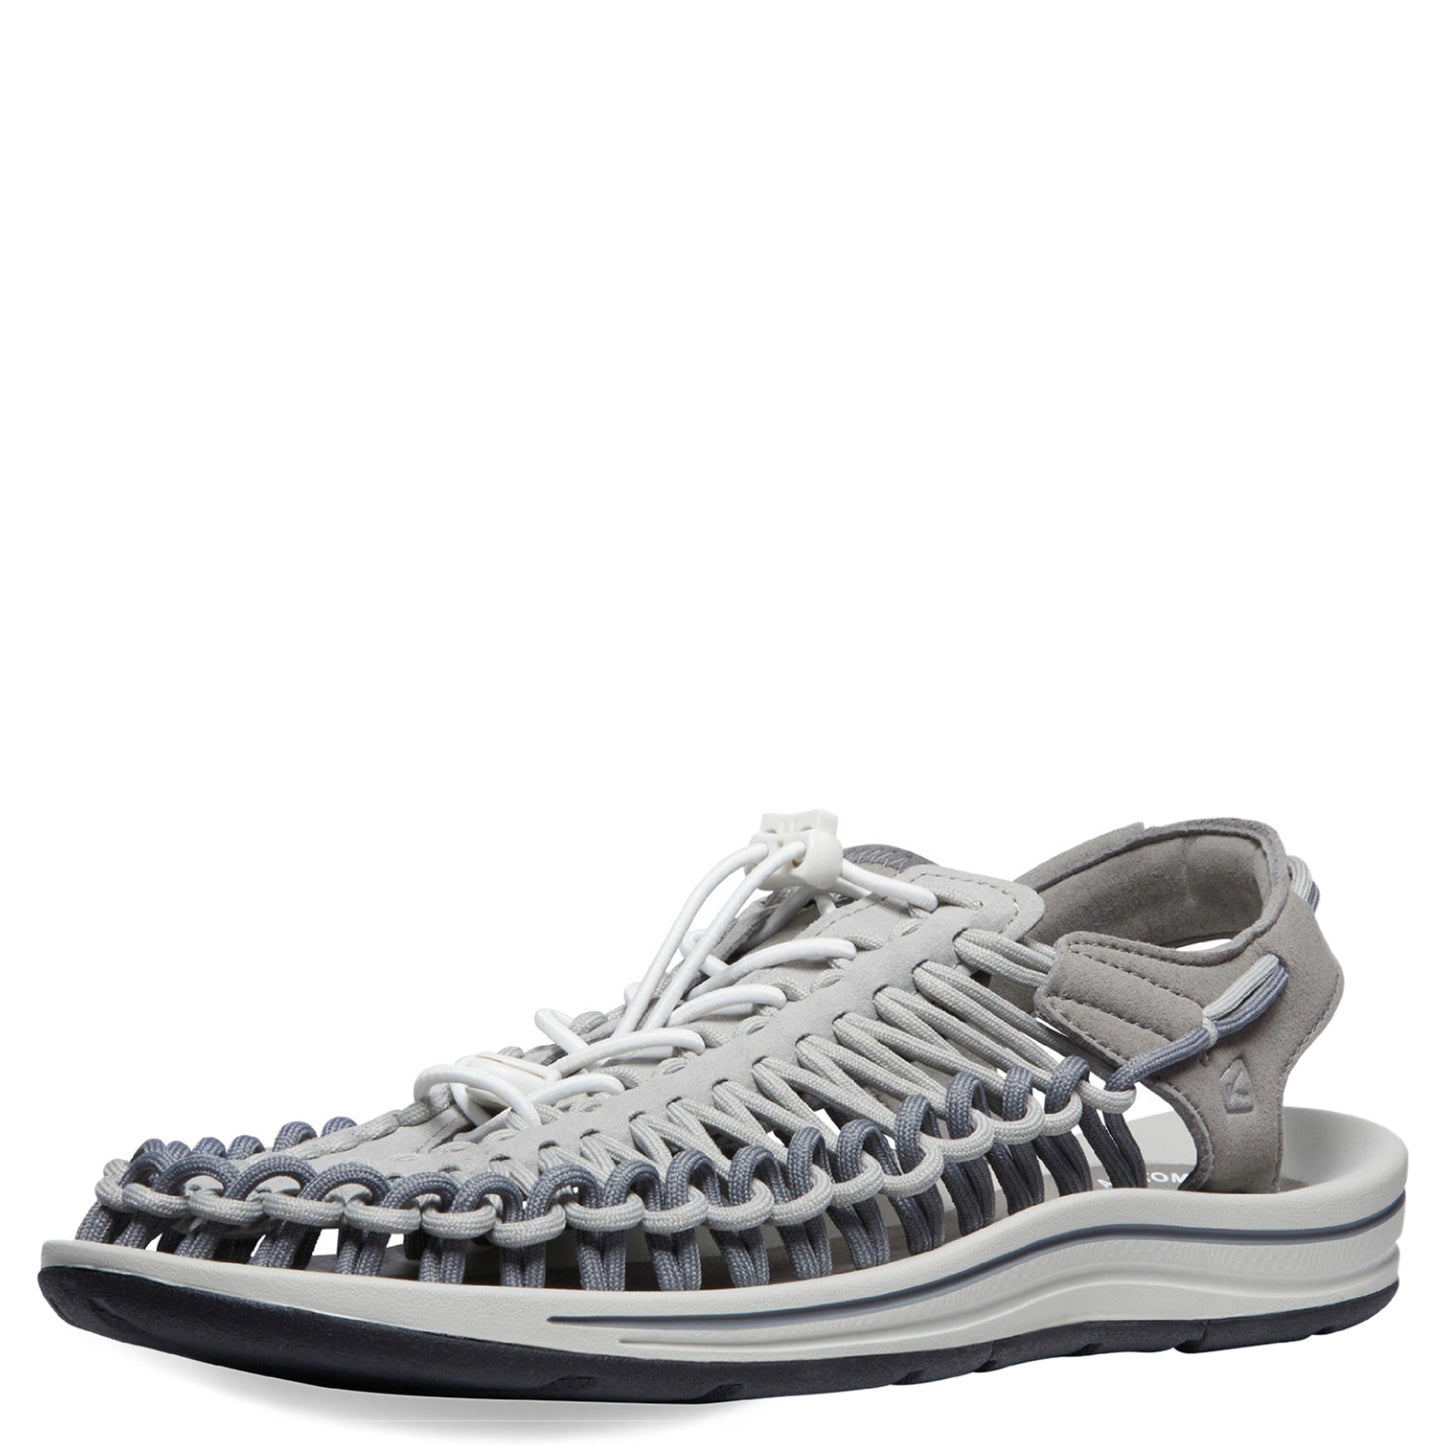 Peltz Shoes  Men's Keen Uneek Sandal Steel Grey/Drizzle 1027434